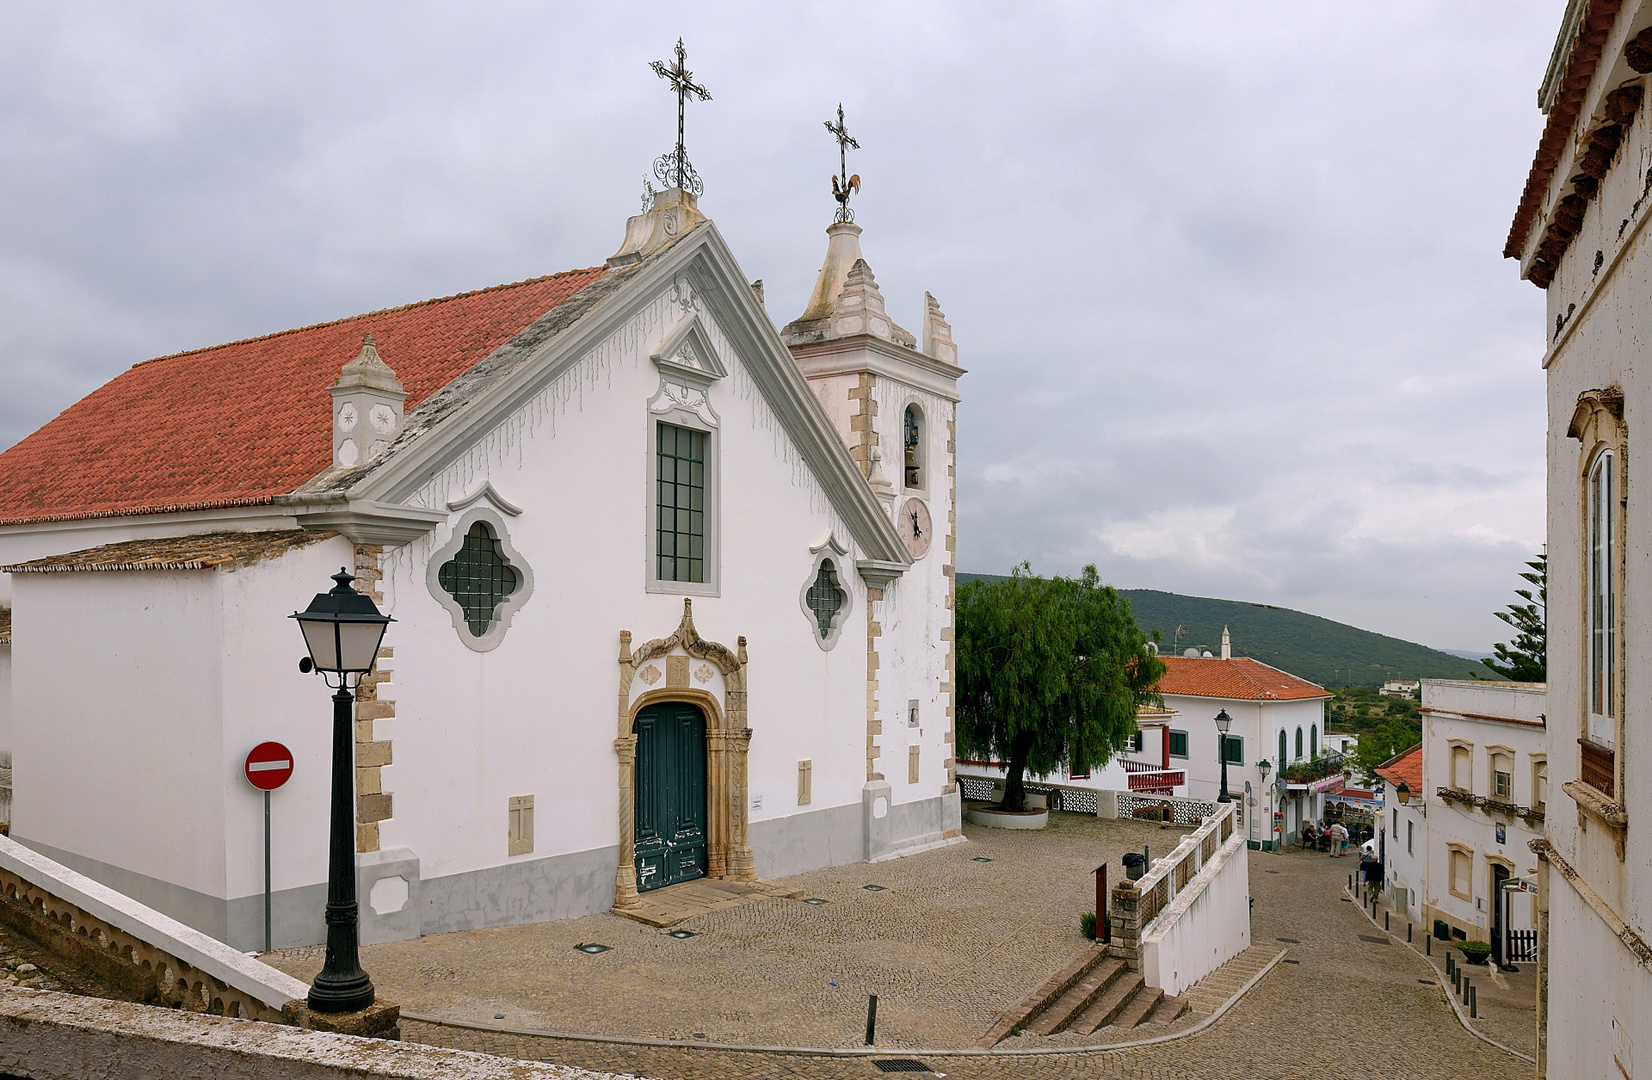  Das Dorf Alte, es ist das typischste und unverfälschste Dorf der Algarve.